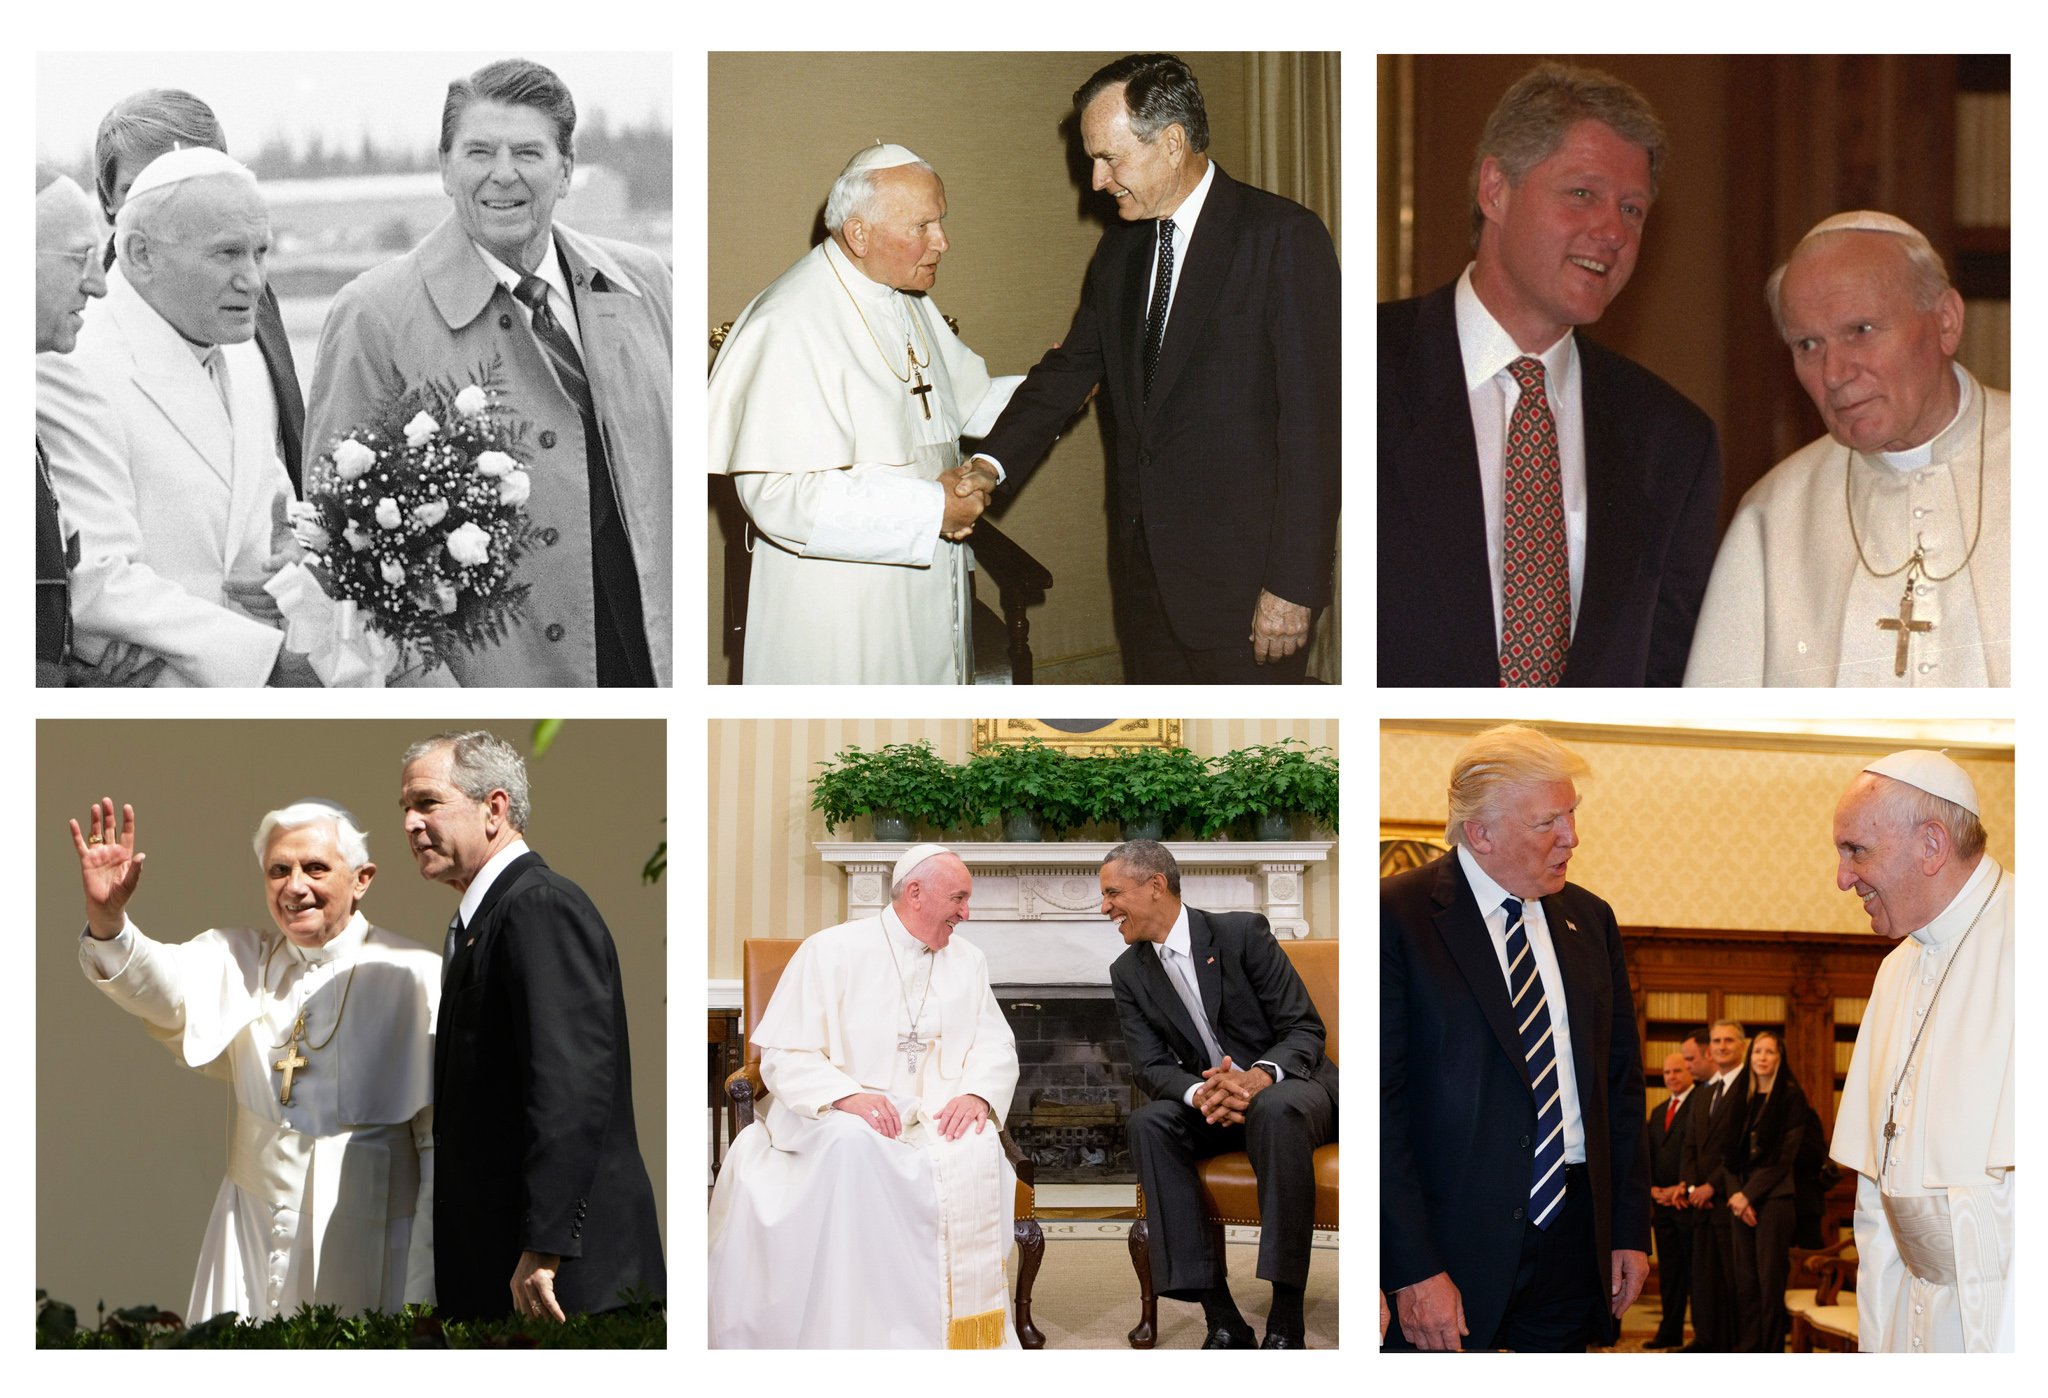 上段左から：ロナルド・レーガン大統領とローマ教皇ヨハネ・パウロ2世。ジョージ・H・W・ブッシュ大統領とヨハネ・パウロ2世。ビル・クリントン大統領とヨハネ・パウロ2世<br /> 下段左から：ジョージ・W・ブッシュ大統領とローマ教皇ベネディクト16世。バラク・オバマ大統領とローマ教皇フランシスコ。ドナルド・トランプ大統領とフランシスコ (All images © AP Images)